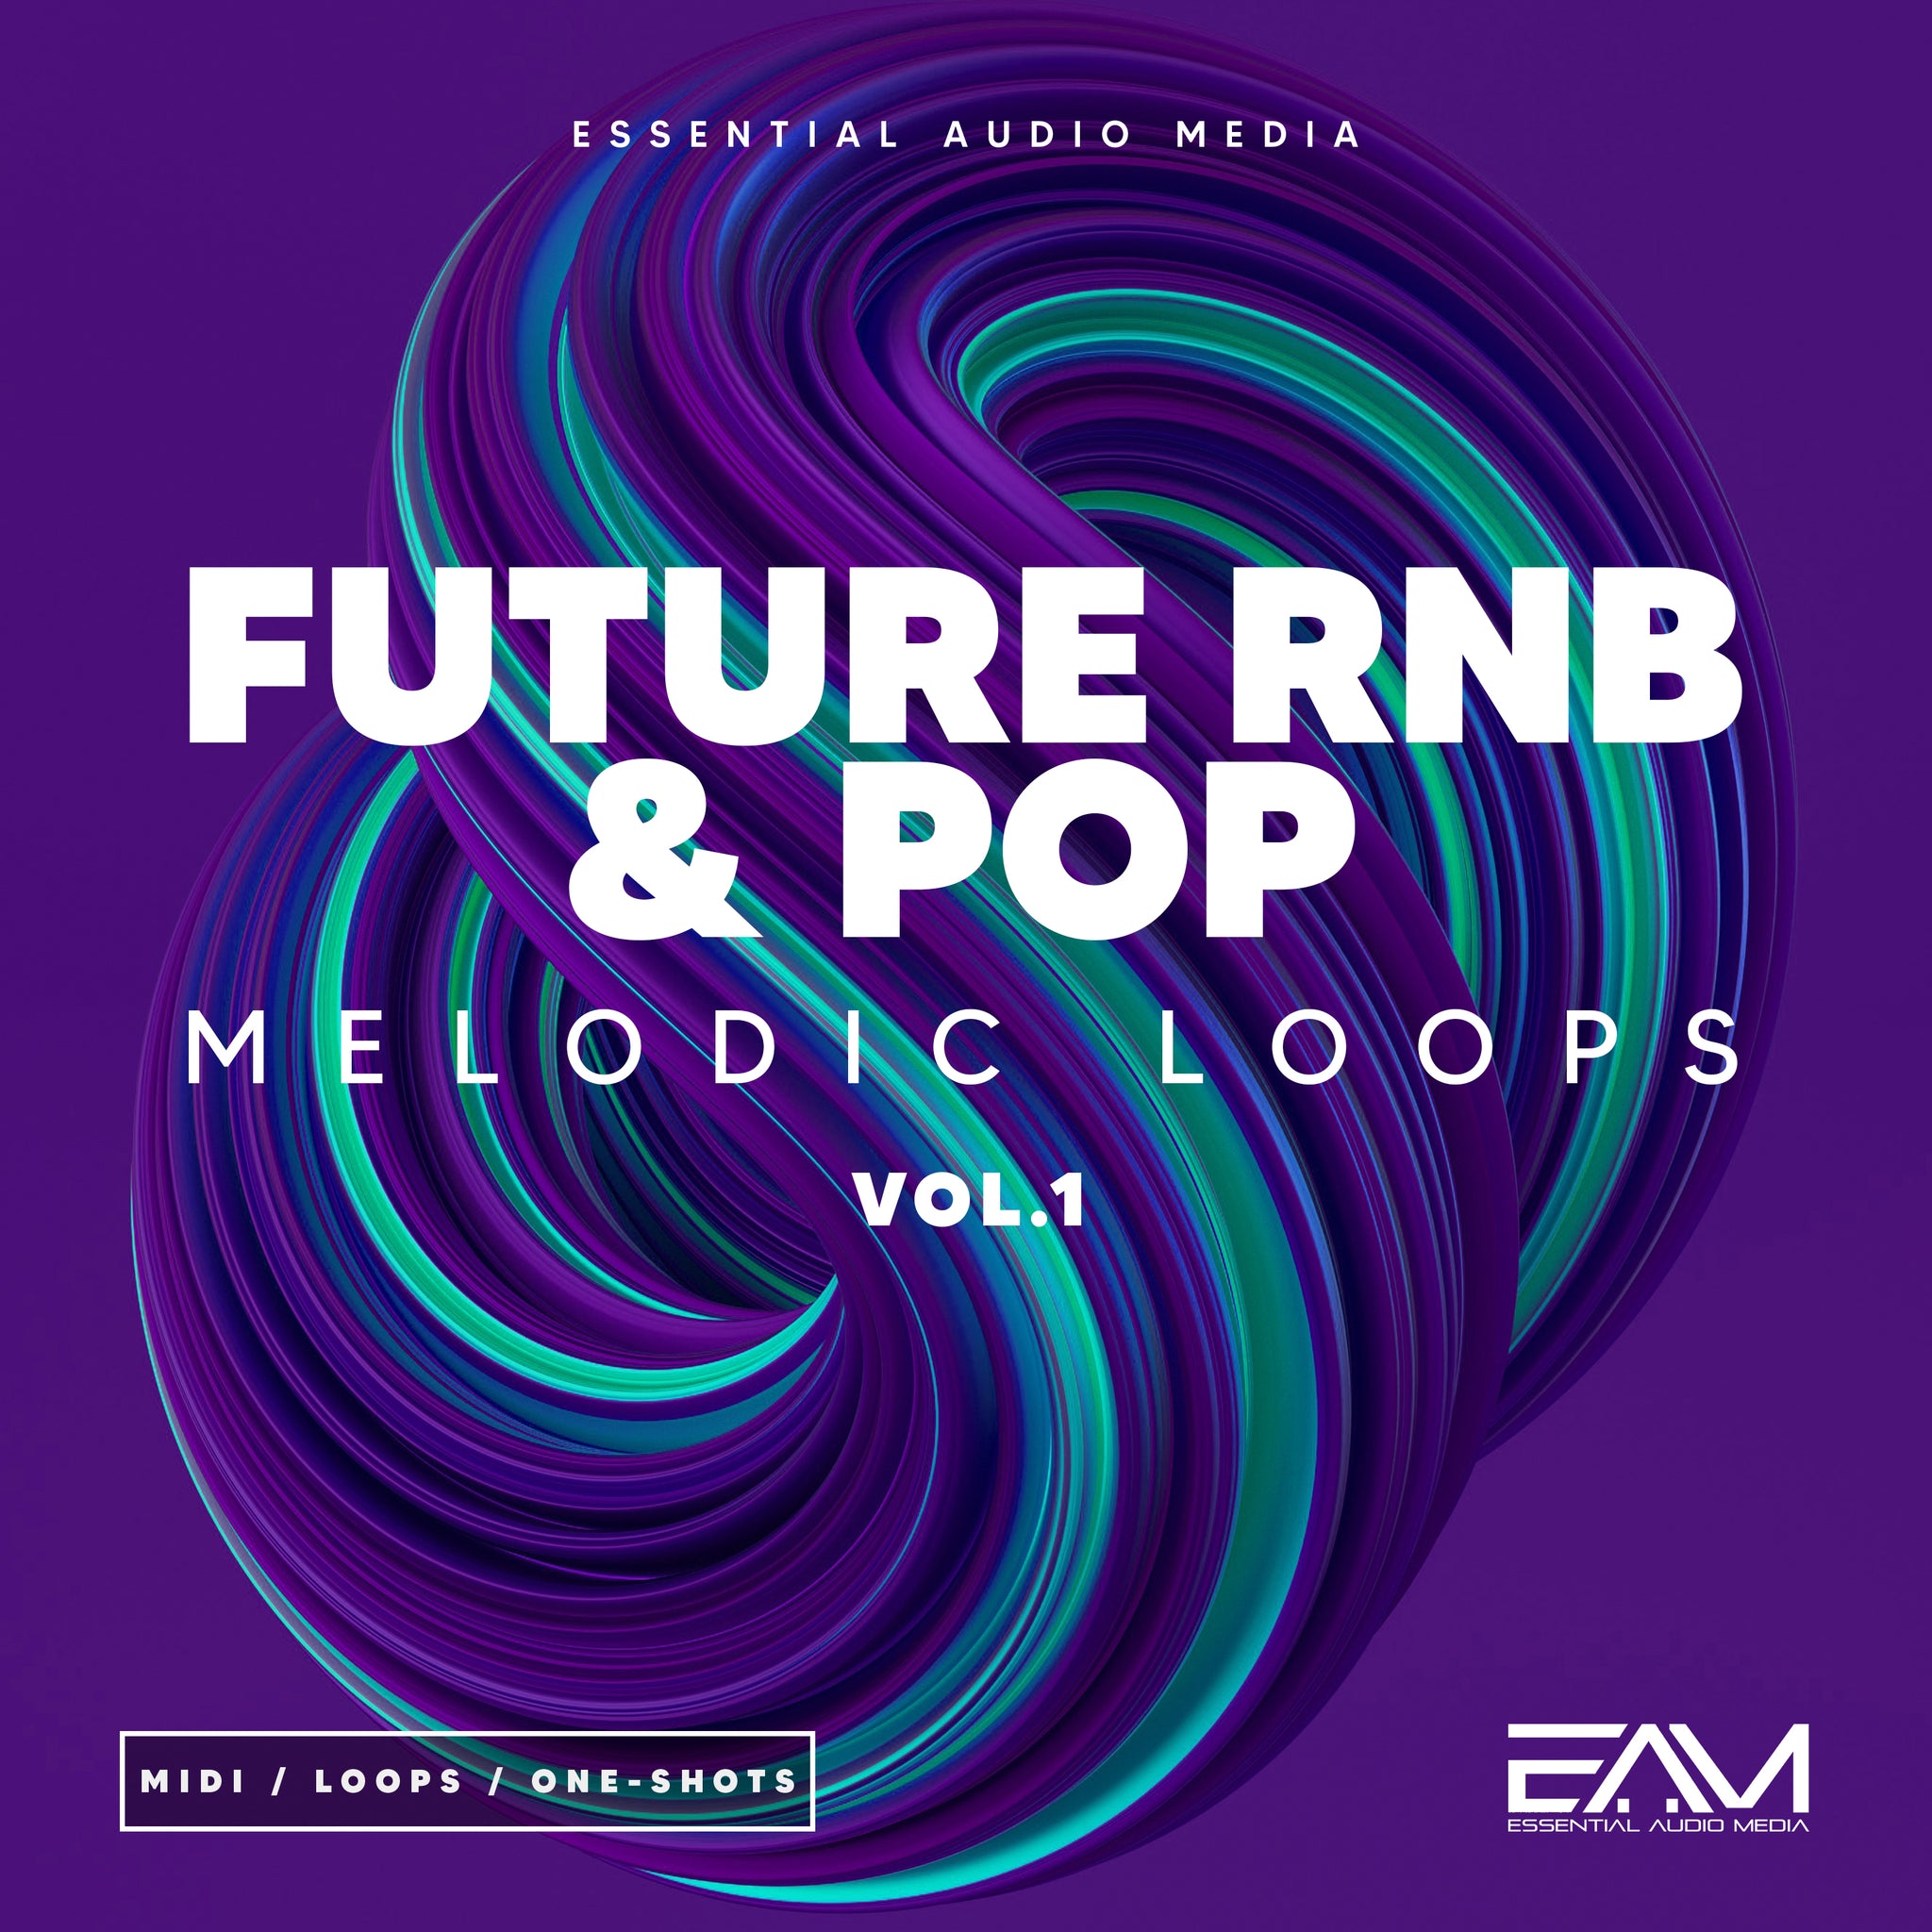 Future RnB & Pop Melodic Loops Vol.1